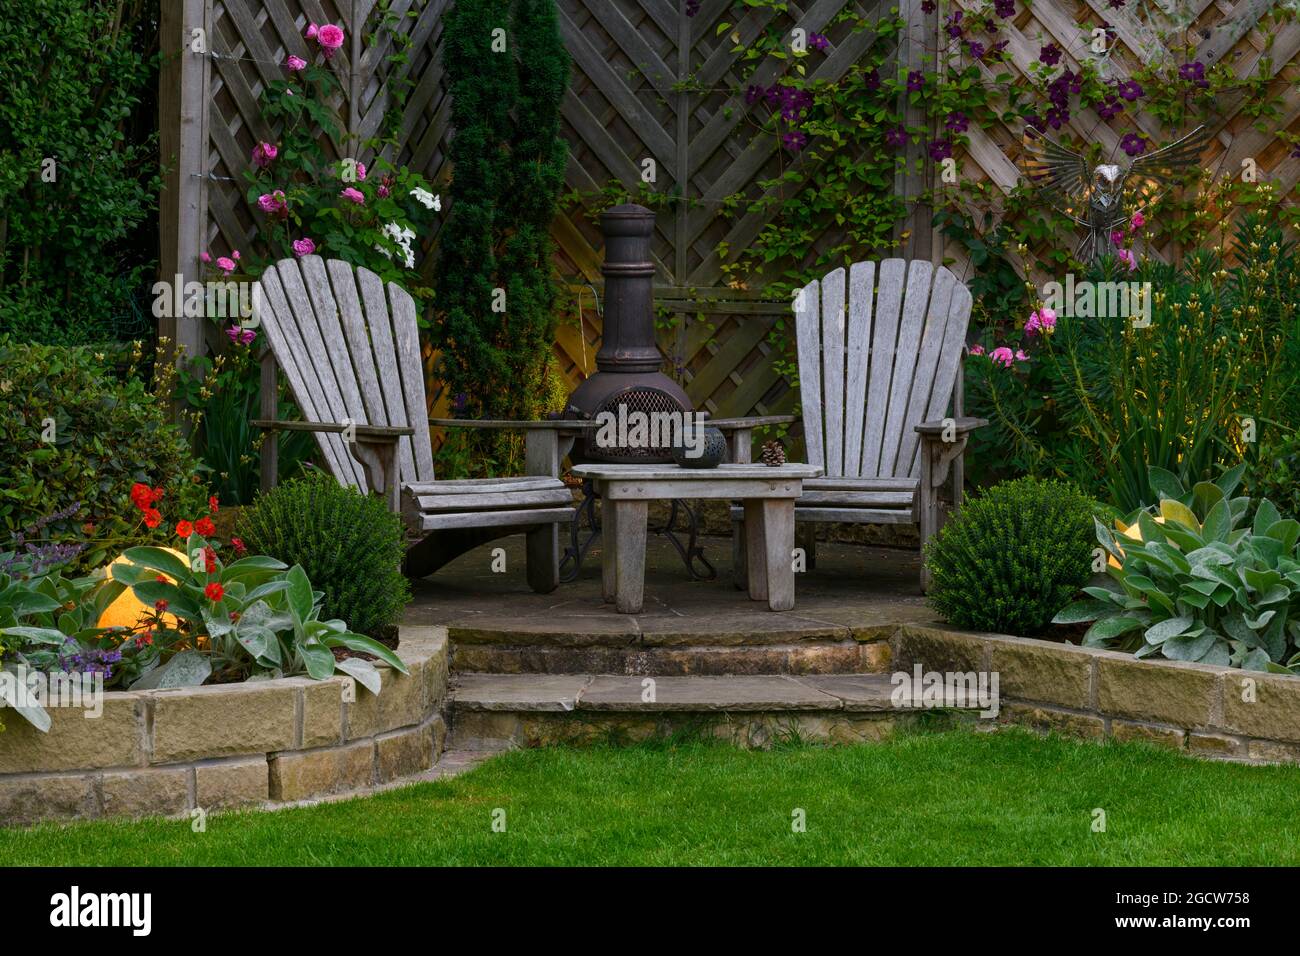 Schöner landschaftlich gestalteter privater Garten (modernes Design, gemischte Bepflanzung, Tisch, Sitze, Chiminea, Beleuchtete Globenleuchten) - Yorkshire, England, Großbritannien. Stockfoto